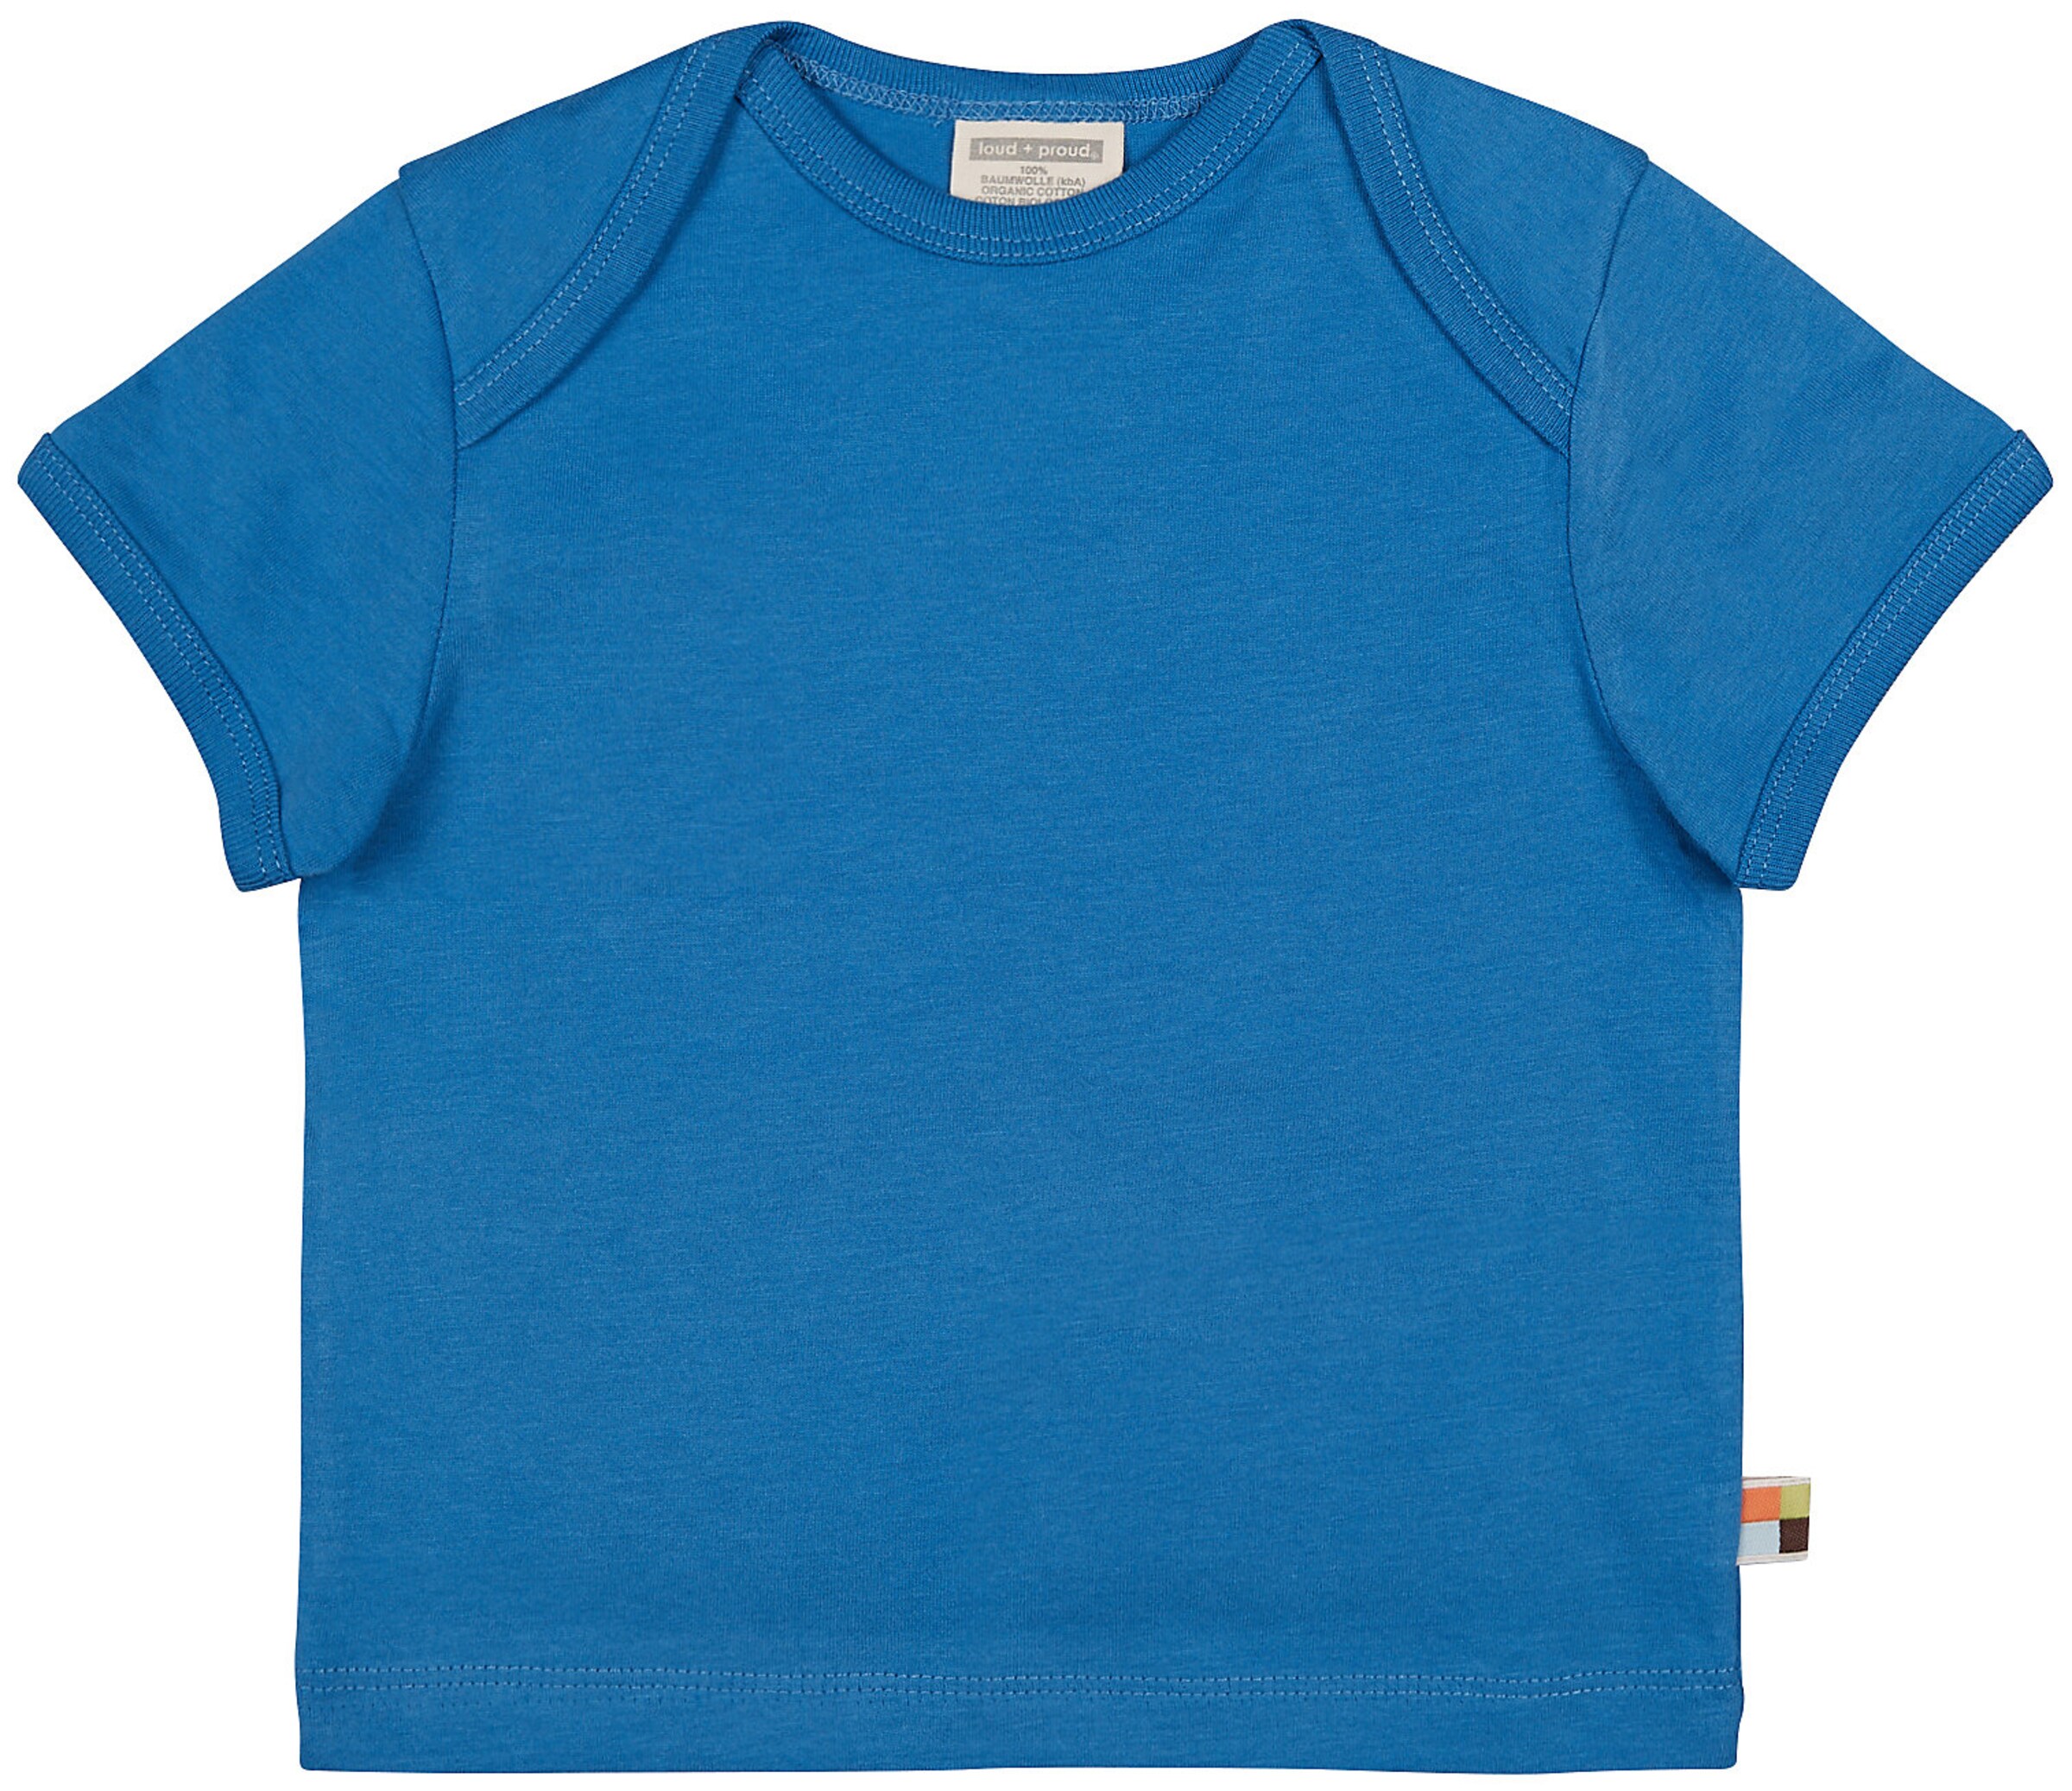 Kinder Bekleidung loud + proud T-Shirt in Blau - IF06485